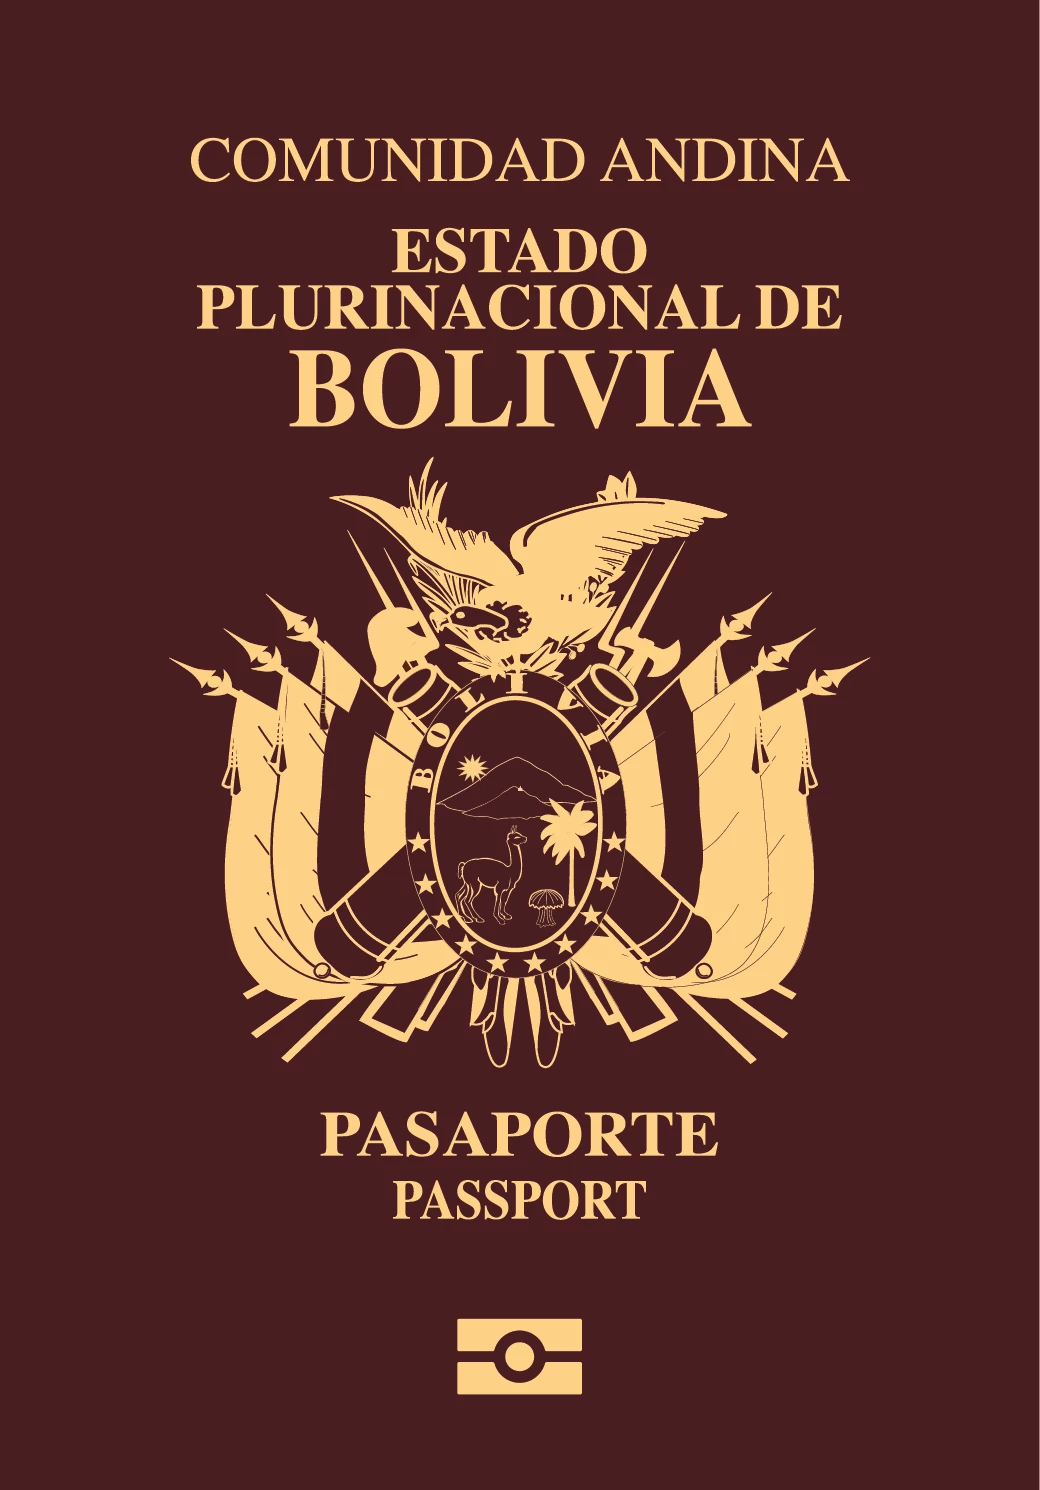 Paspor Bolivia